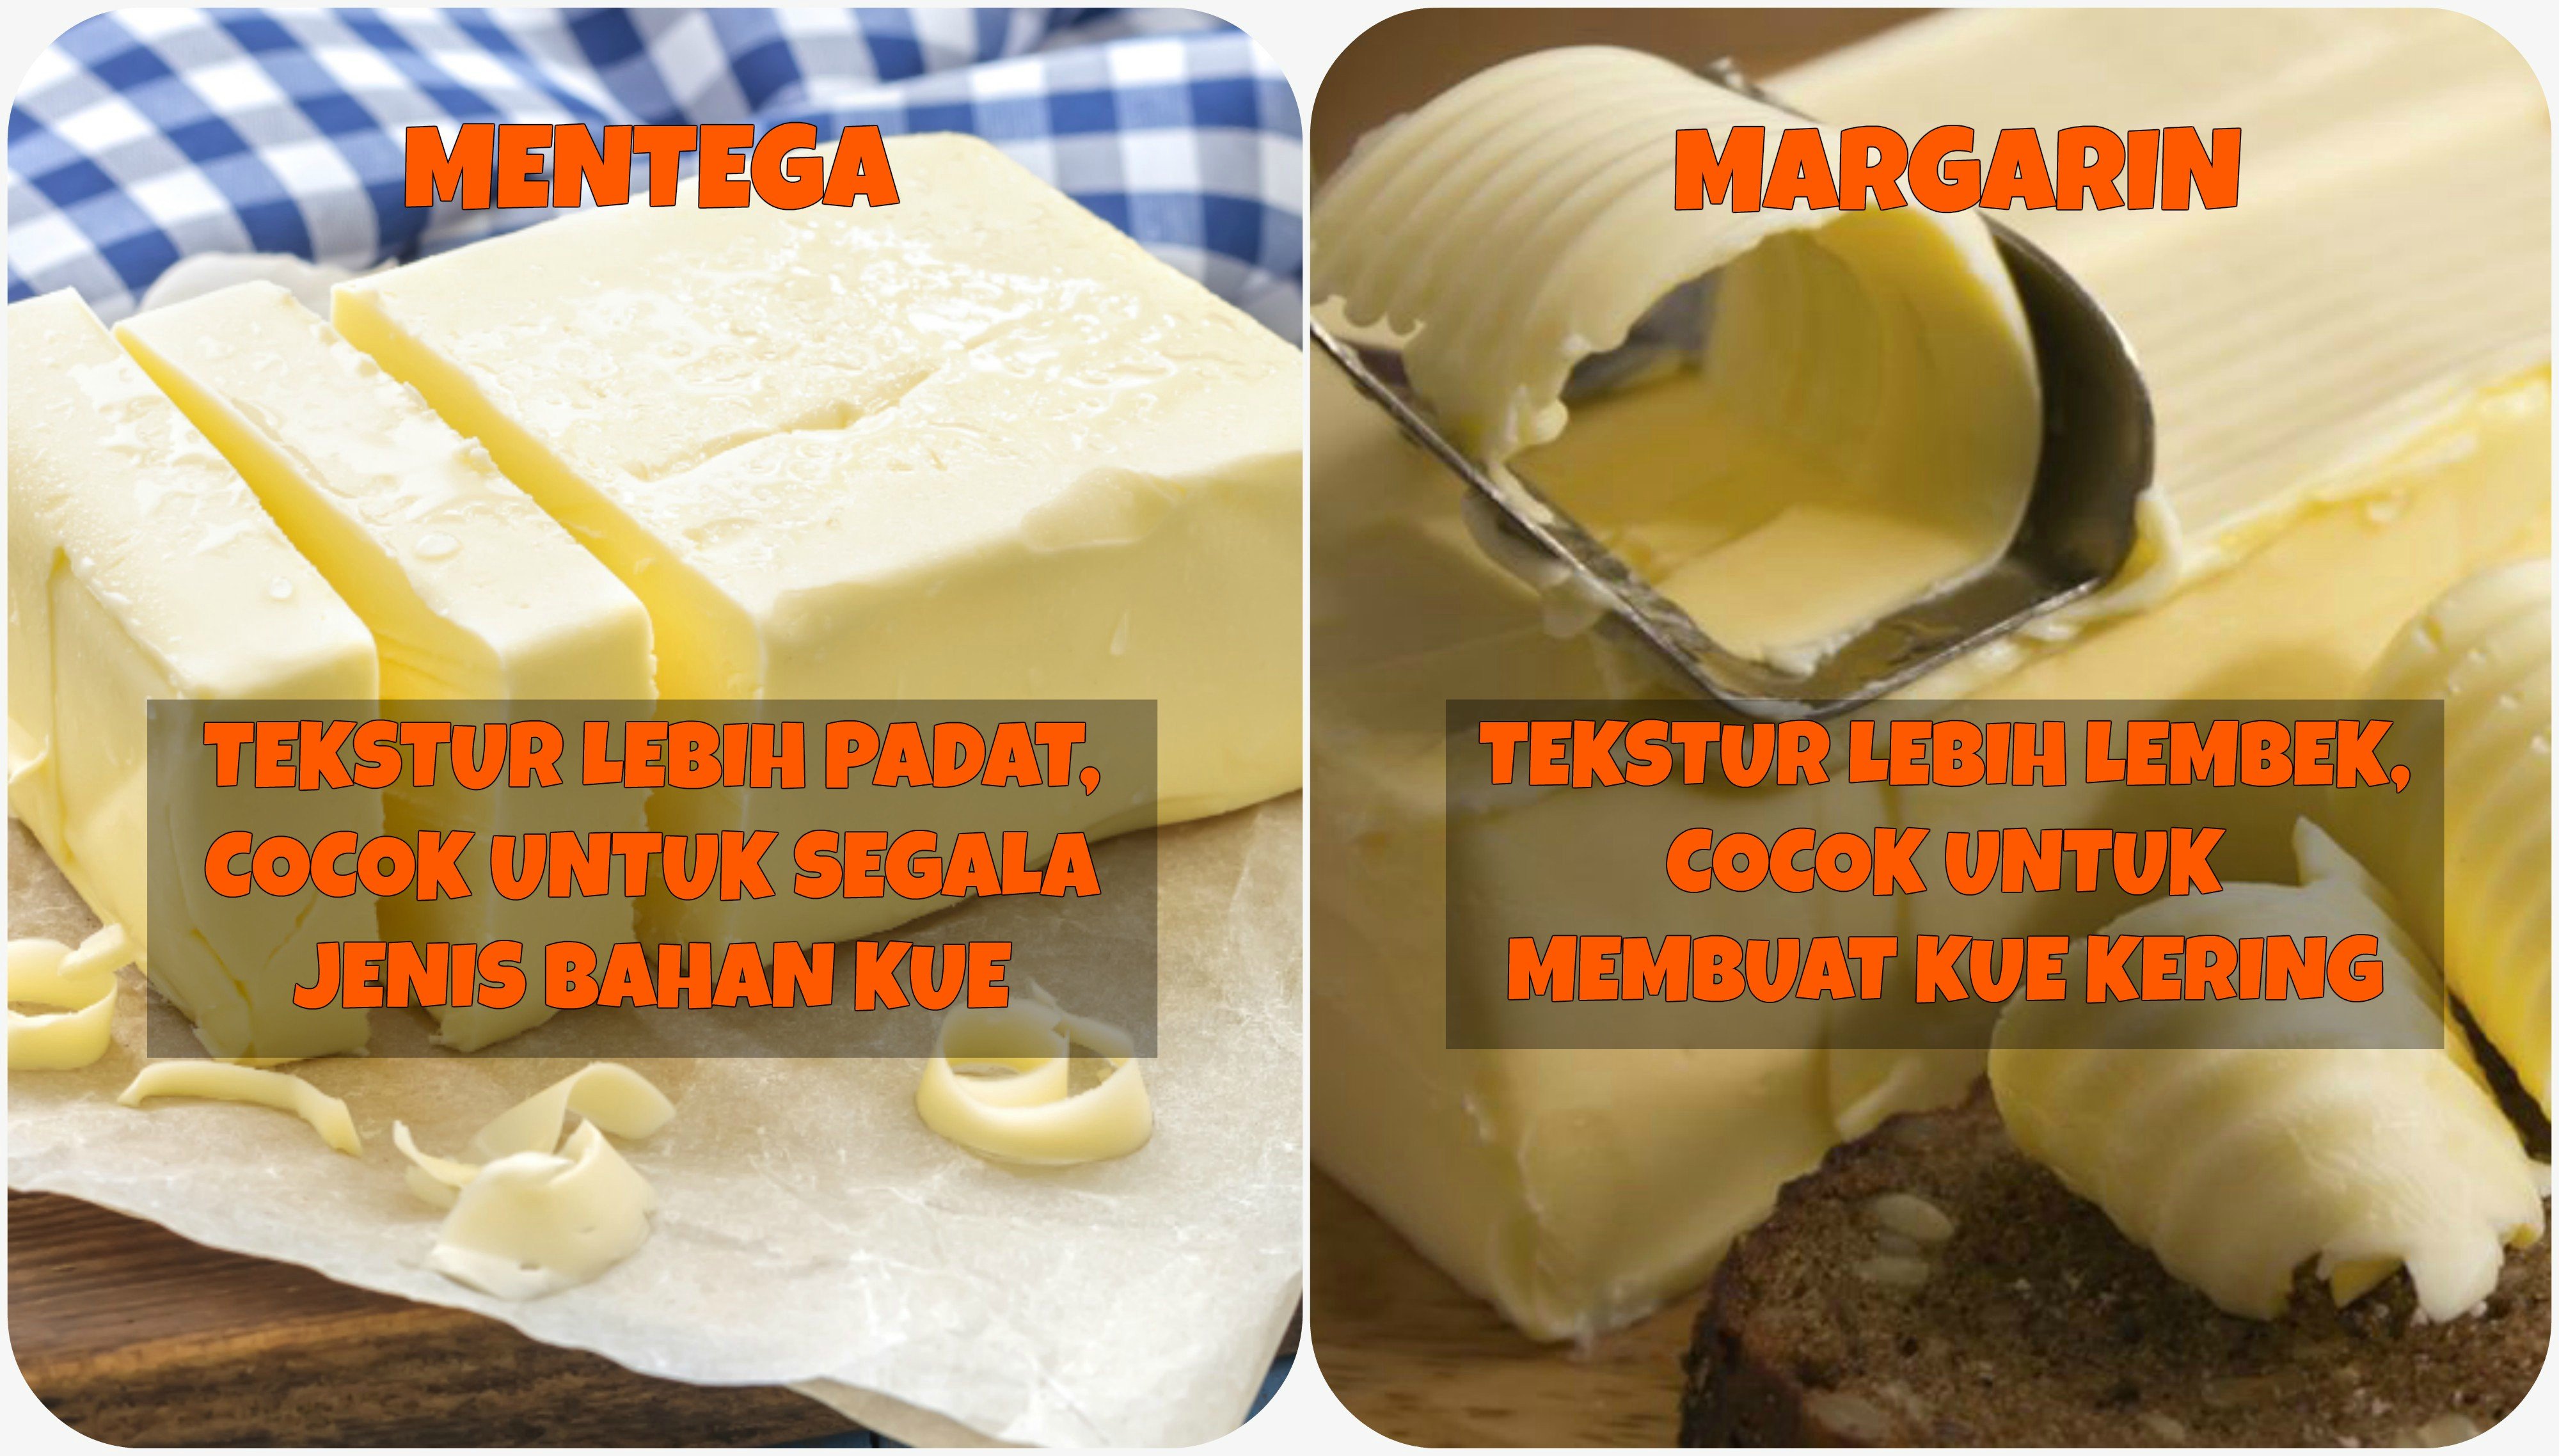 Perbedaan Tekstur Mentega dan Margarin